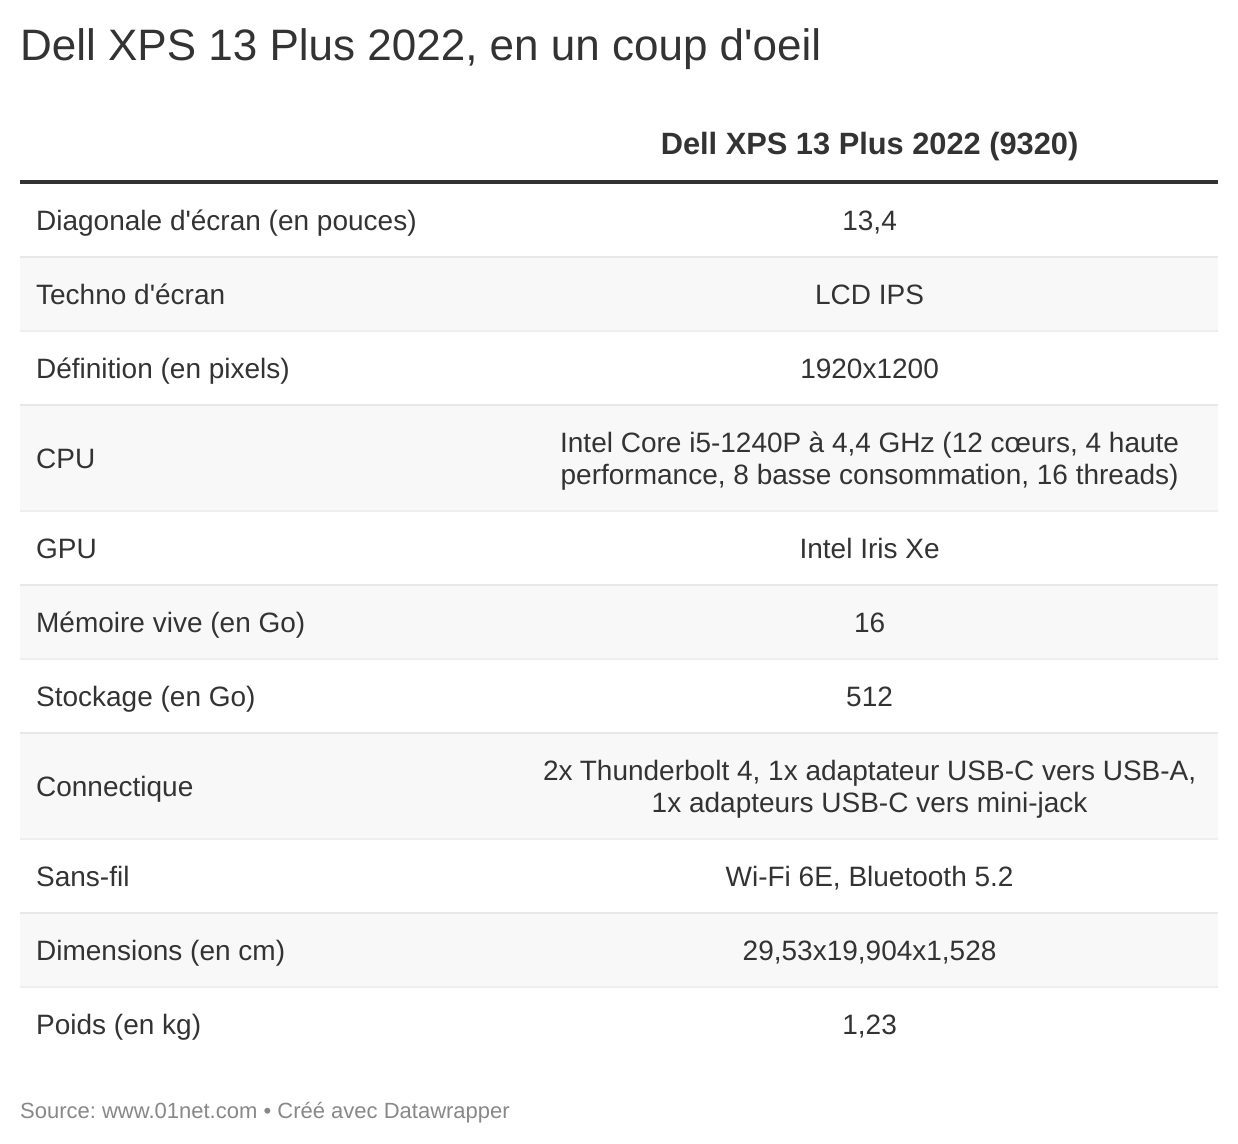 Le Dell XPS 13 Plus 2022, en un coup d'oeil...